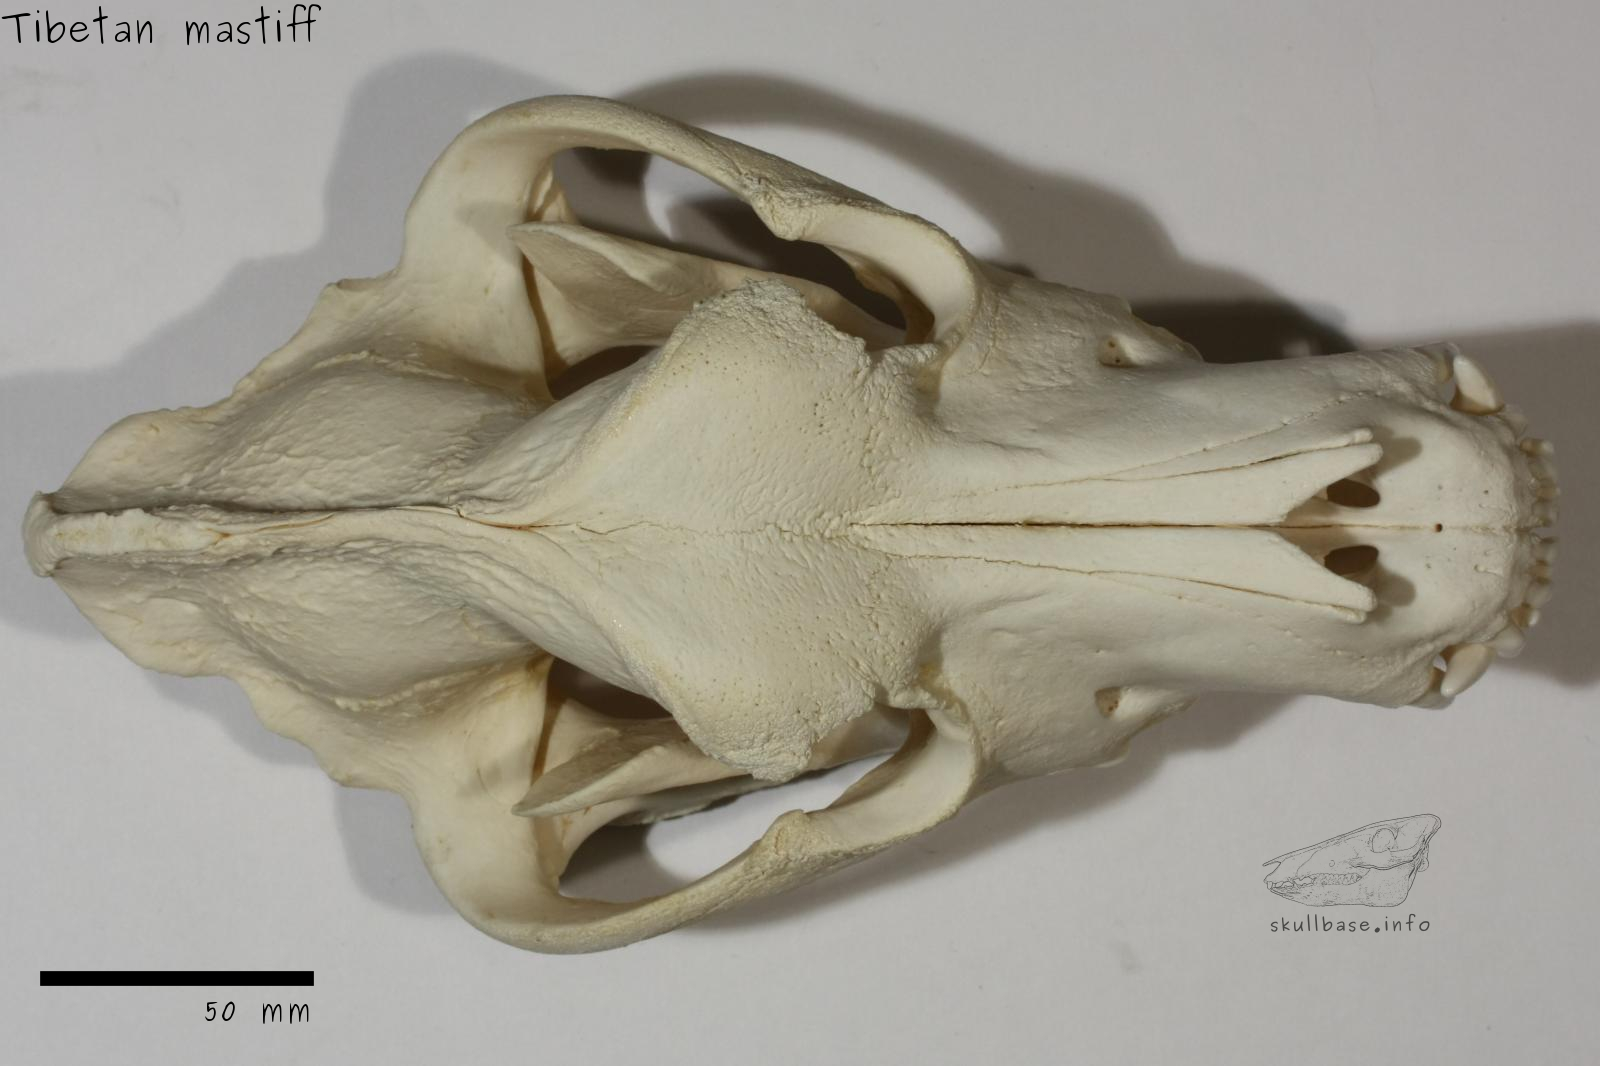 Tibetan mastiff (Canis lupus familiaris) skull dorsal view